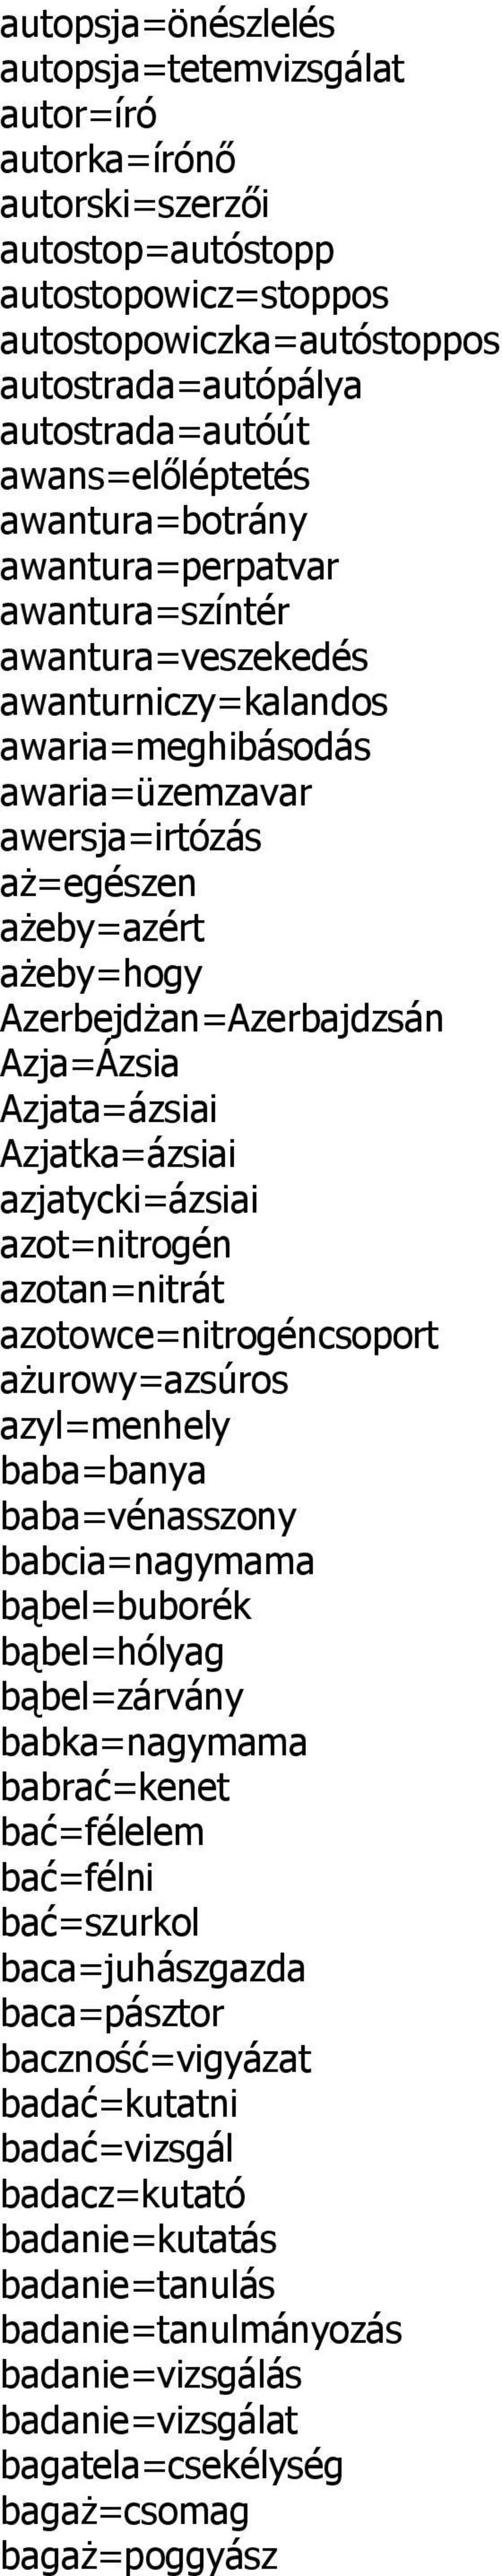 Azerbejdżan=Azerbajdzsán Azja=Ázsia Azjata=ázsiai Azjatka=ázsiai azjatycki=ázsiai azot=nitrogén azotan=nitrát azotowce=nitrogéncsoport ażurowy=azsúros azyl=menhely baba=banya baba=vénasszony